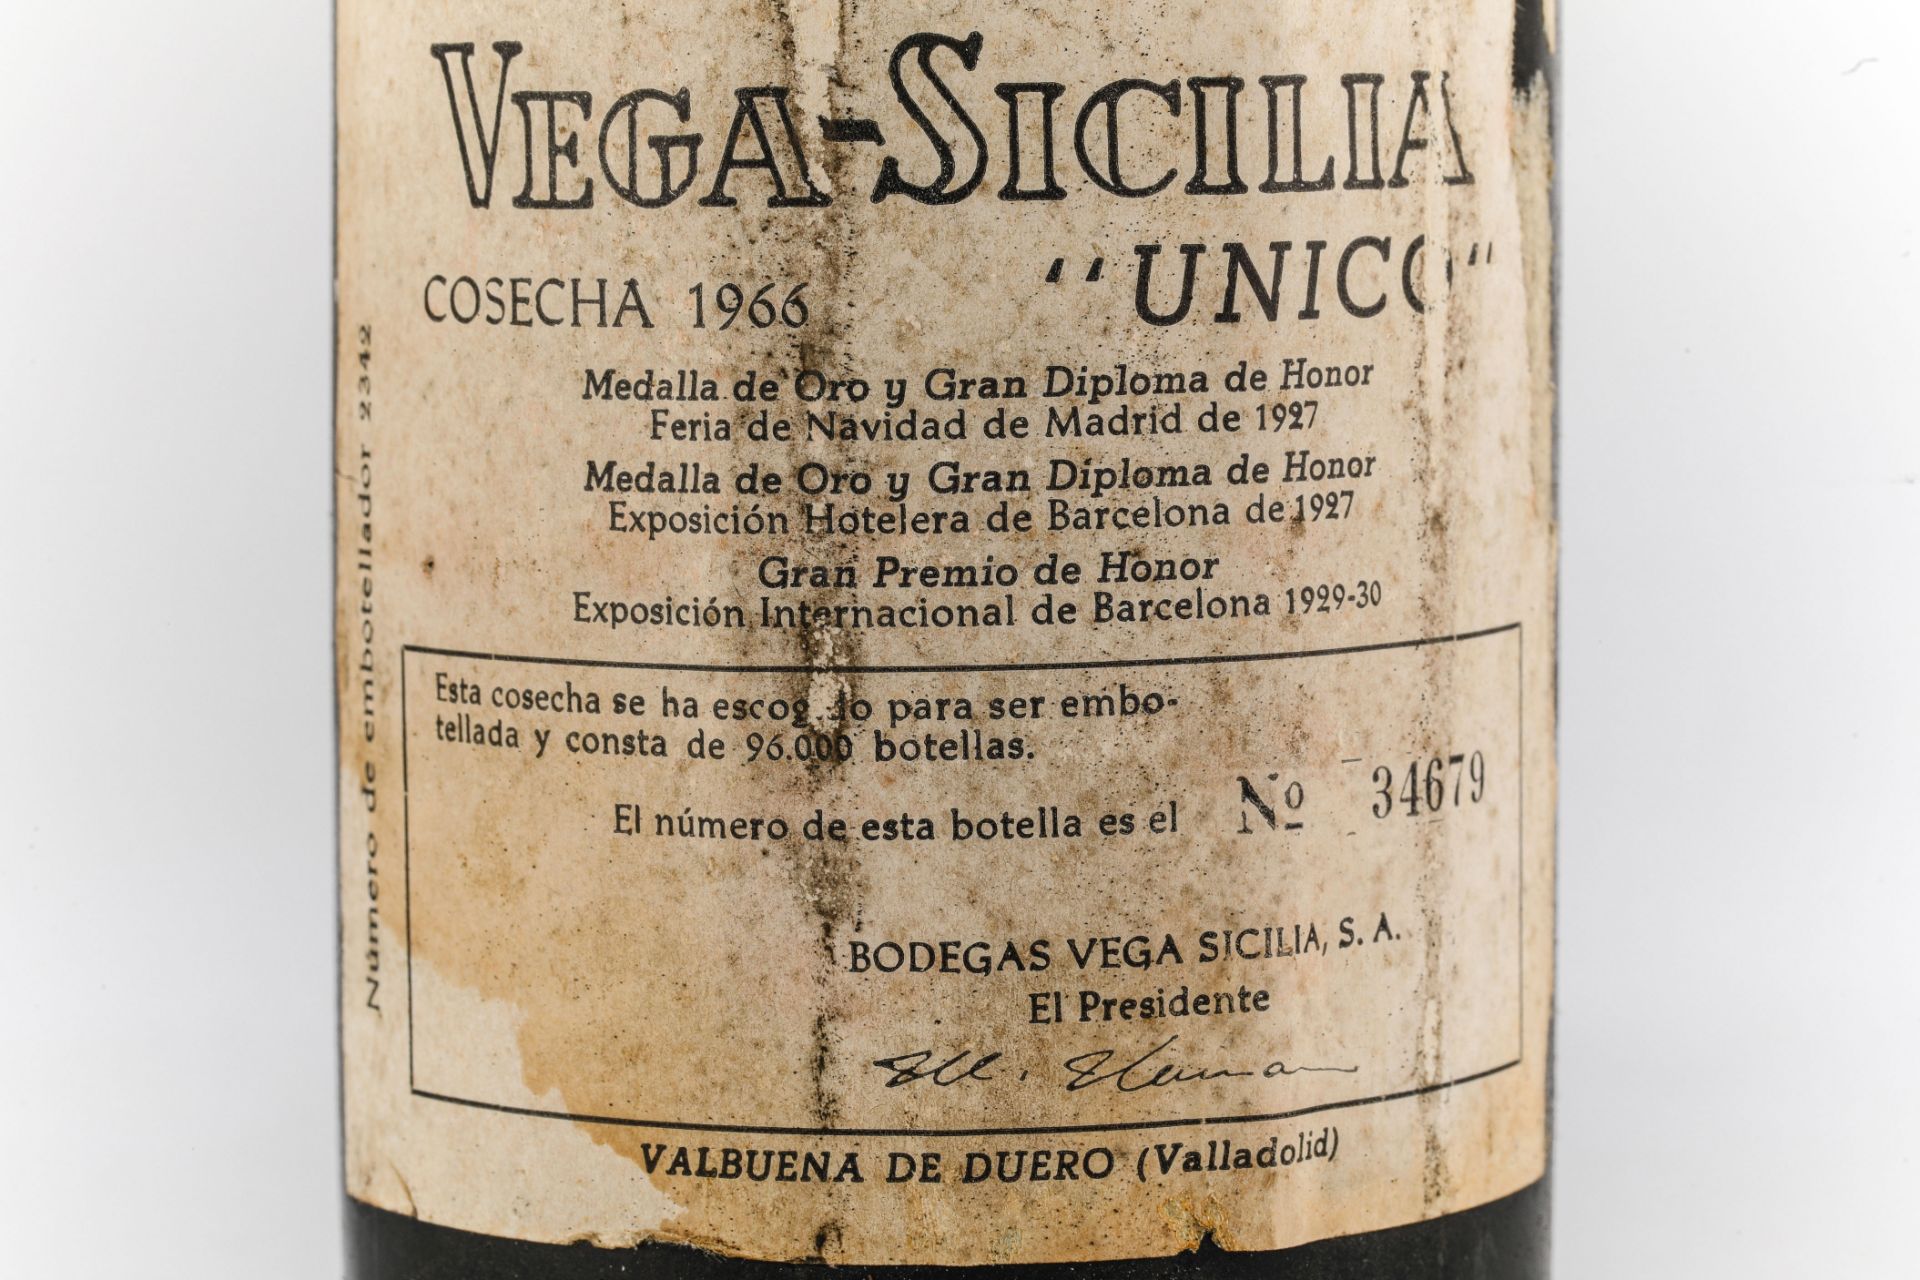 VEGA SICILIA UNICO. 1966. Ribera del Duero. Bouteille N°34679 sur production de 96 000 bouteilles. - Image 4 of 5